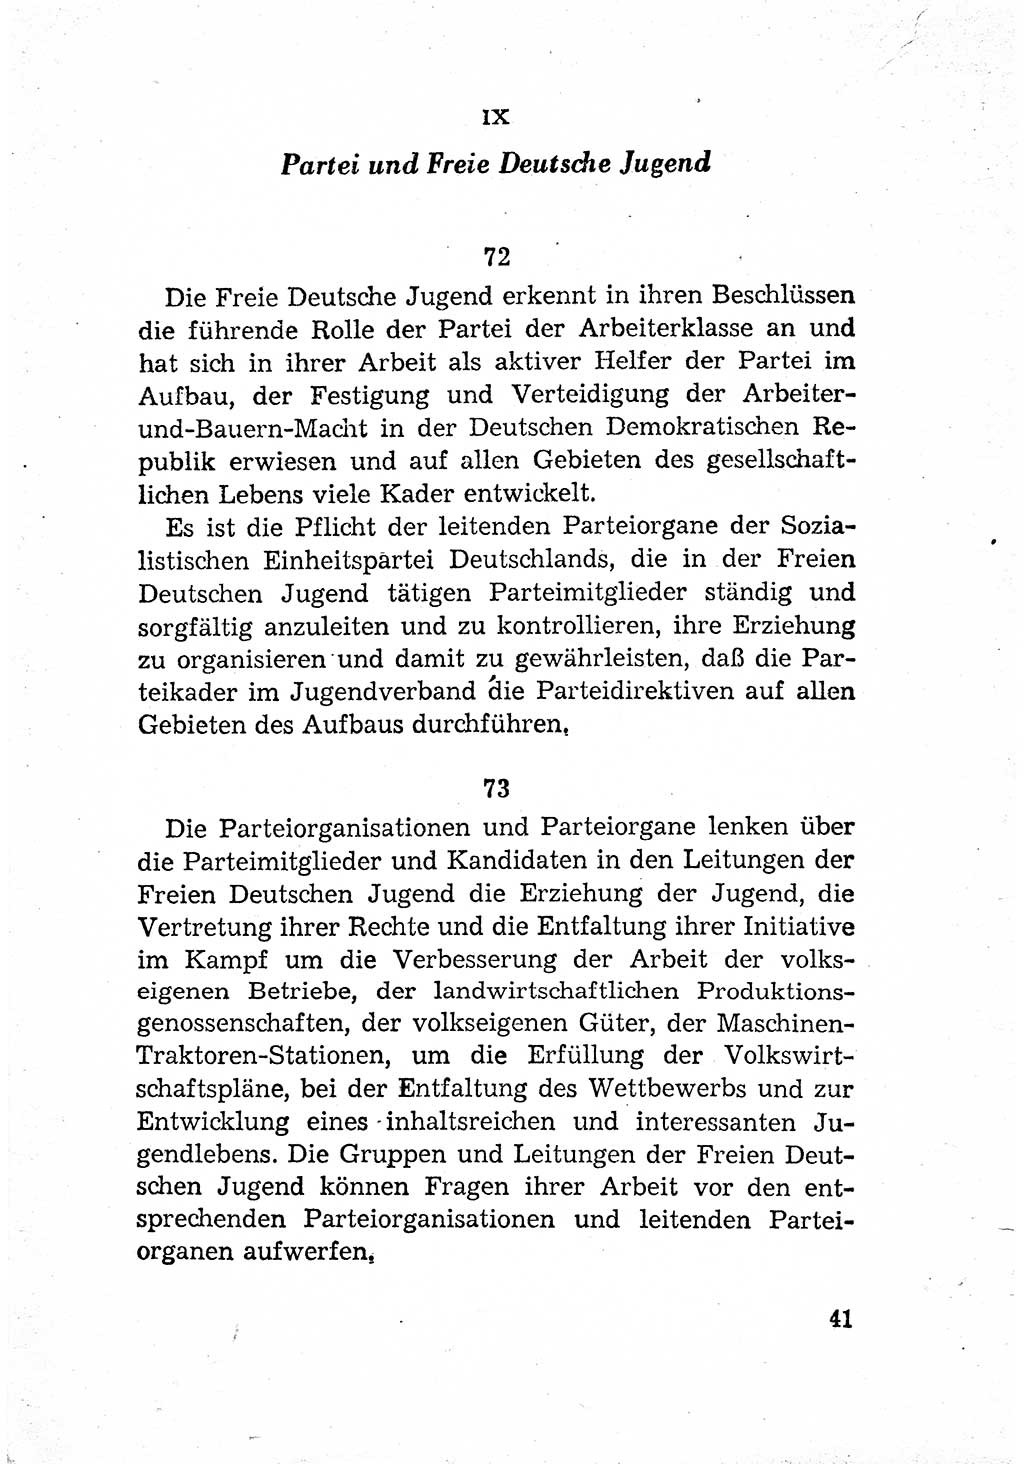 Statut der Sozialistischen Einheitspartei Deutschlands (SED) [Deutsche Demokratische Republik (DDR)] 1958, Seite 41 (St. SED DDR 1958, S. 41)